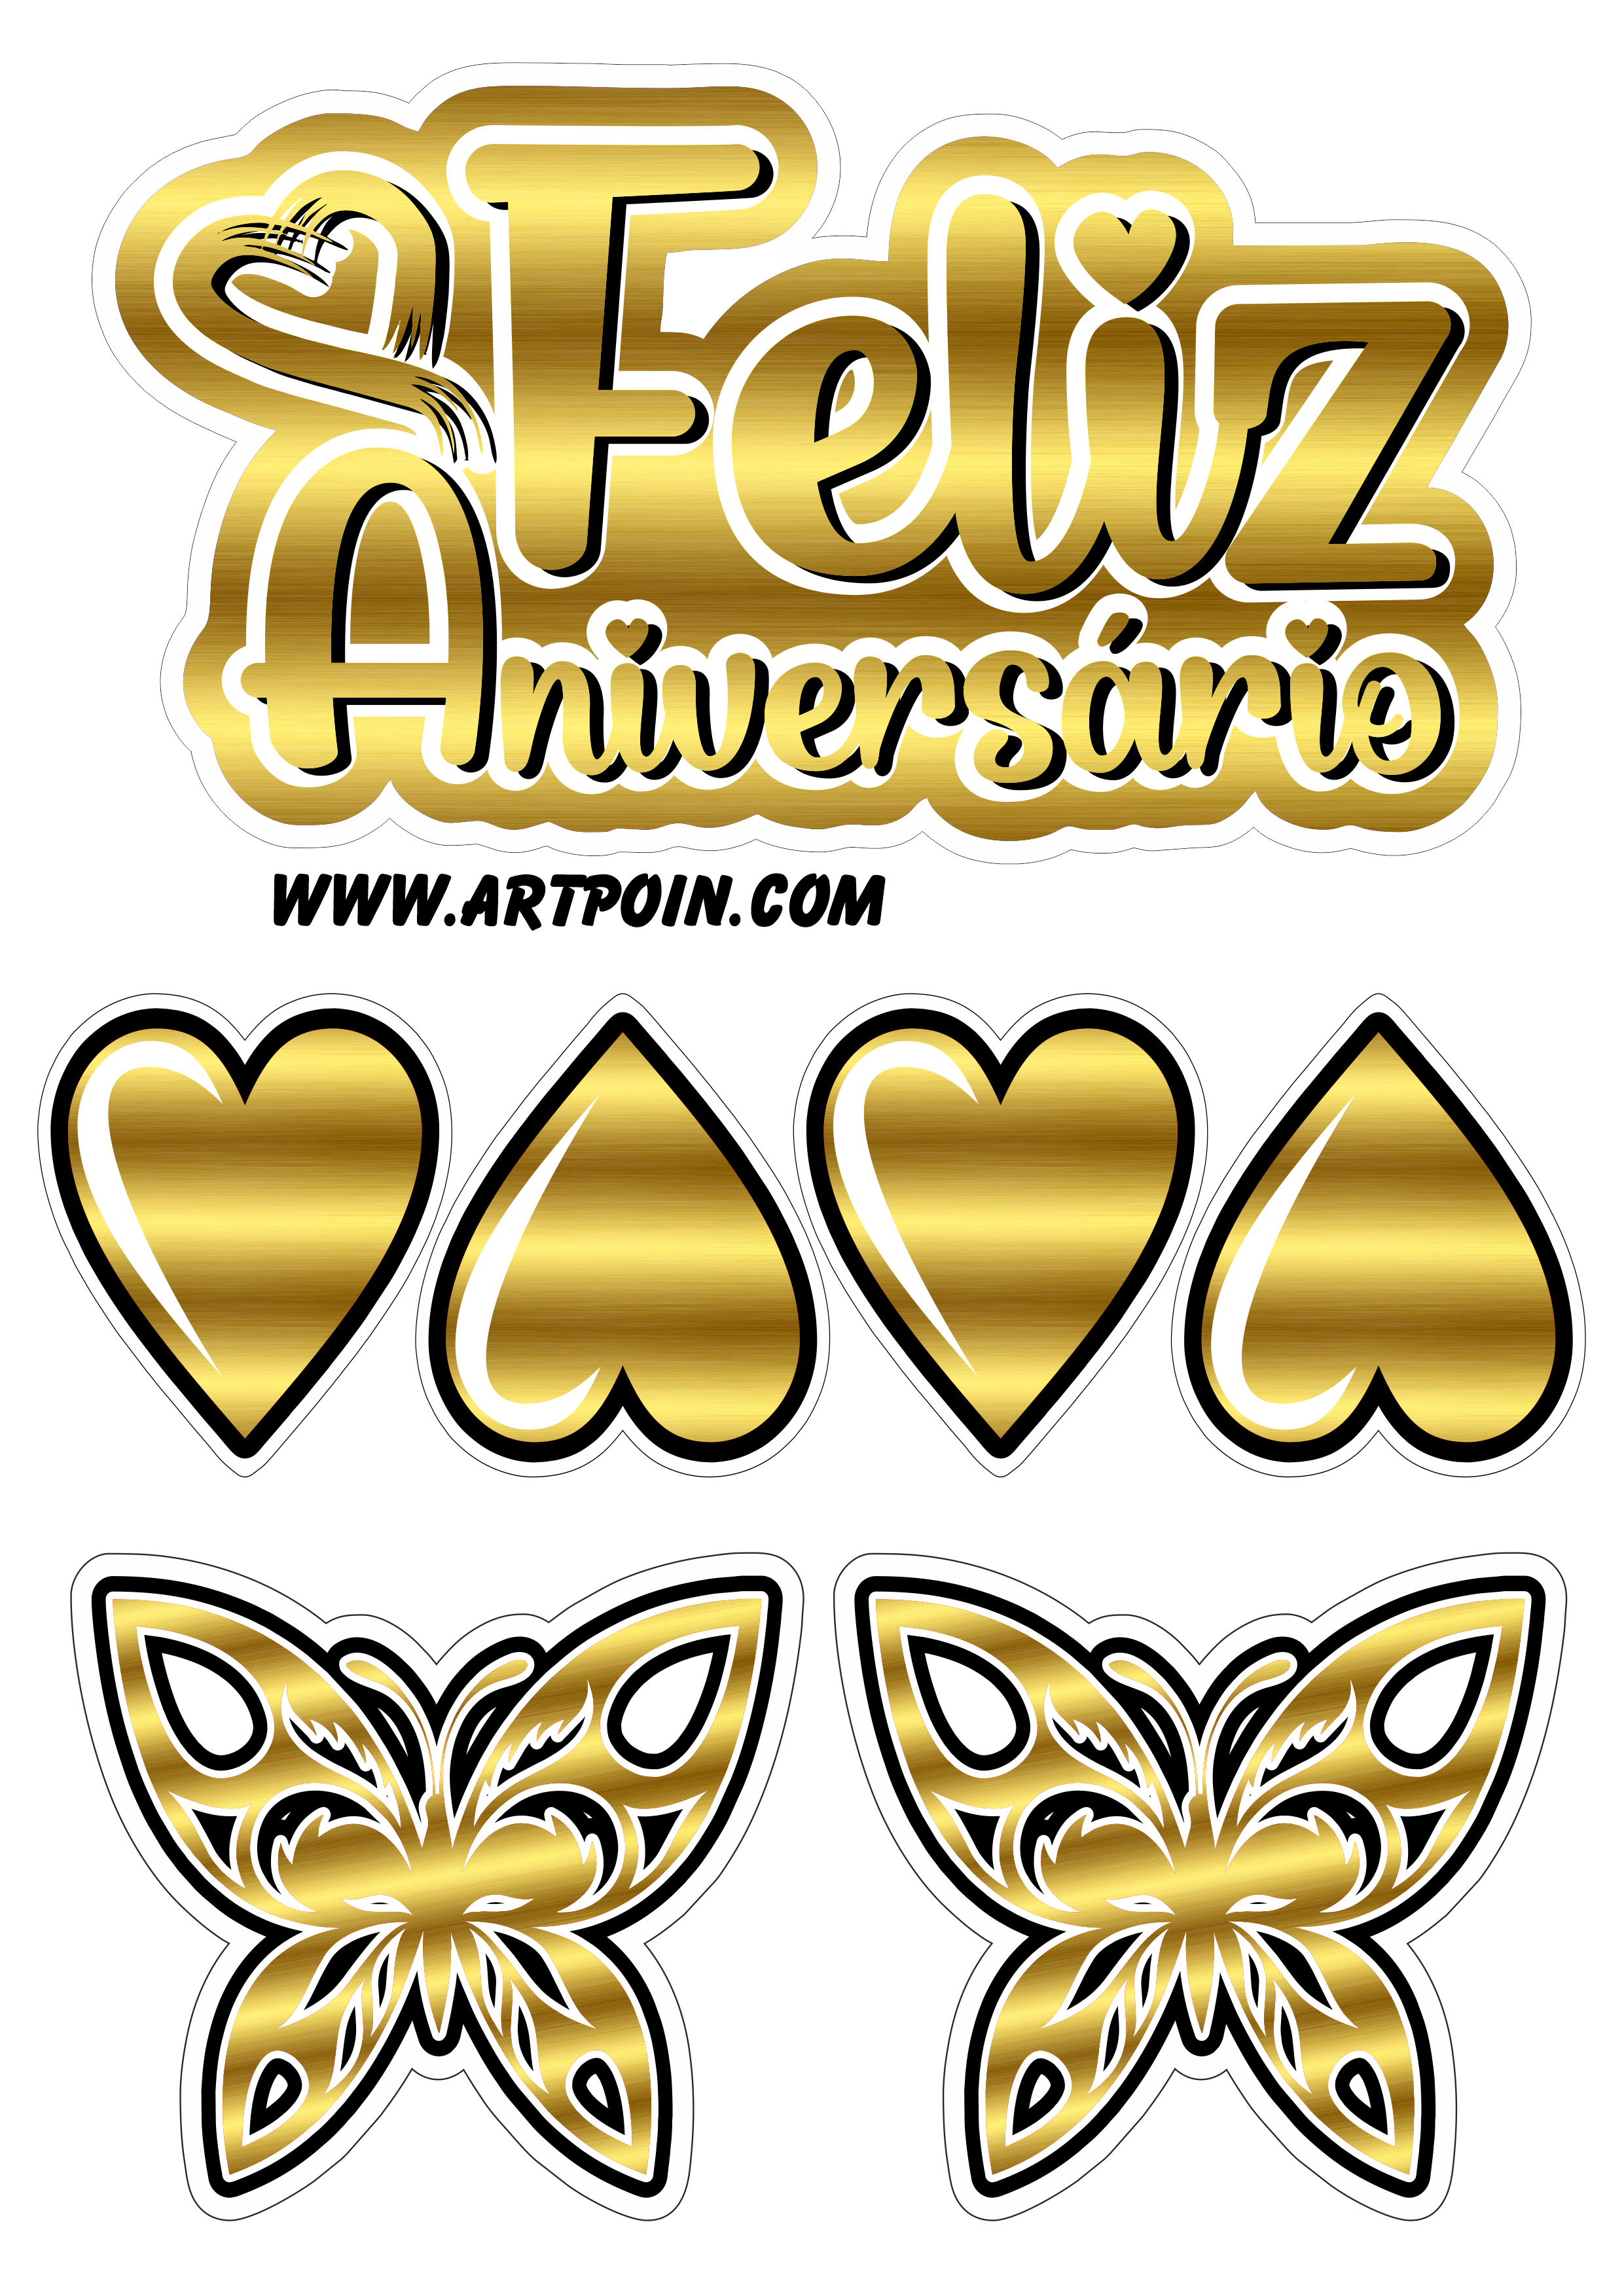 Topo de bolo dourado com corações e borboletas feliz aniversário decoração de festa temática png